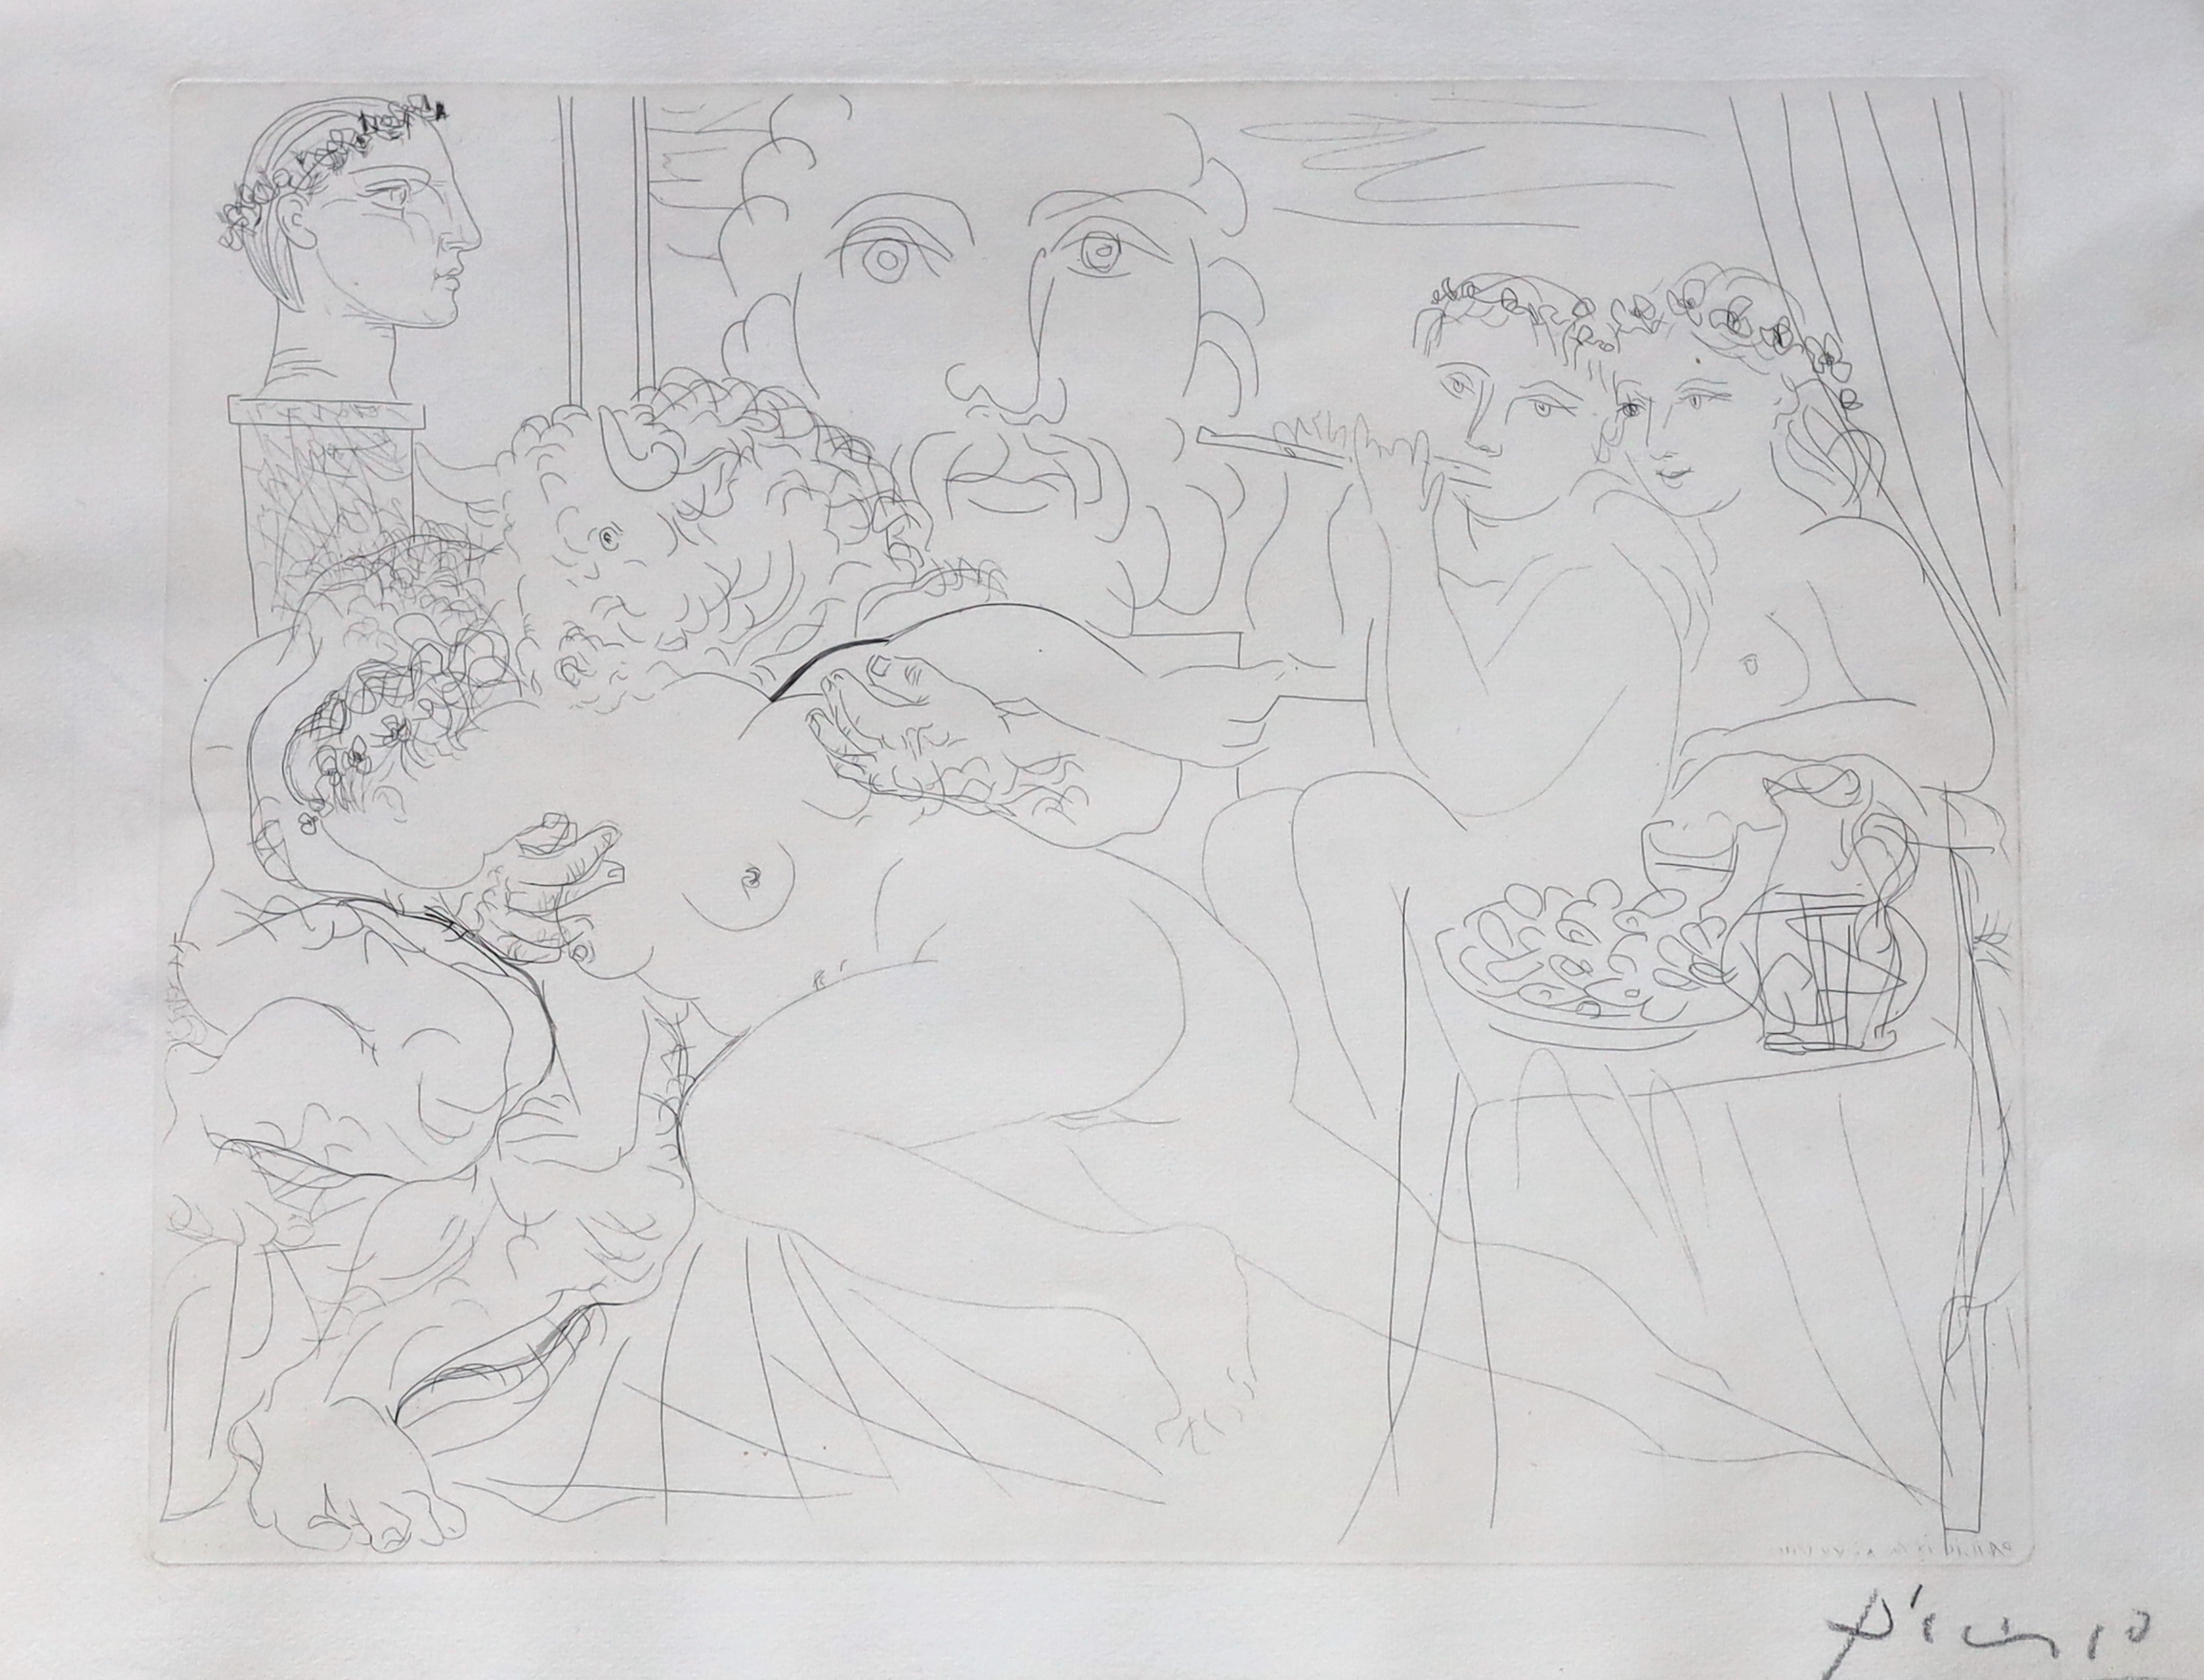 Pablo Picasso (Spanish, 1881-1973), Minotaure caressant une femme, from: La Suite Vollard, etching, 29 x 36cm